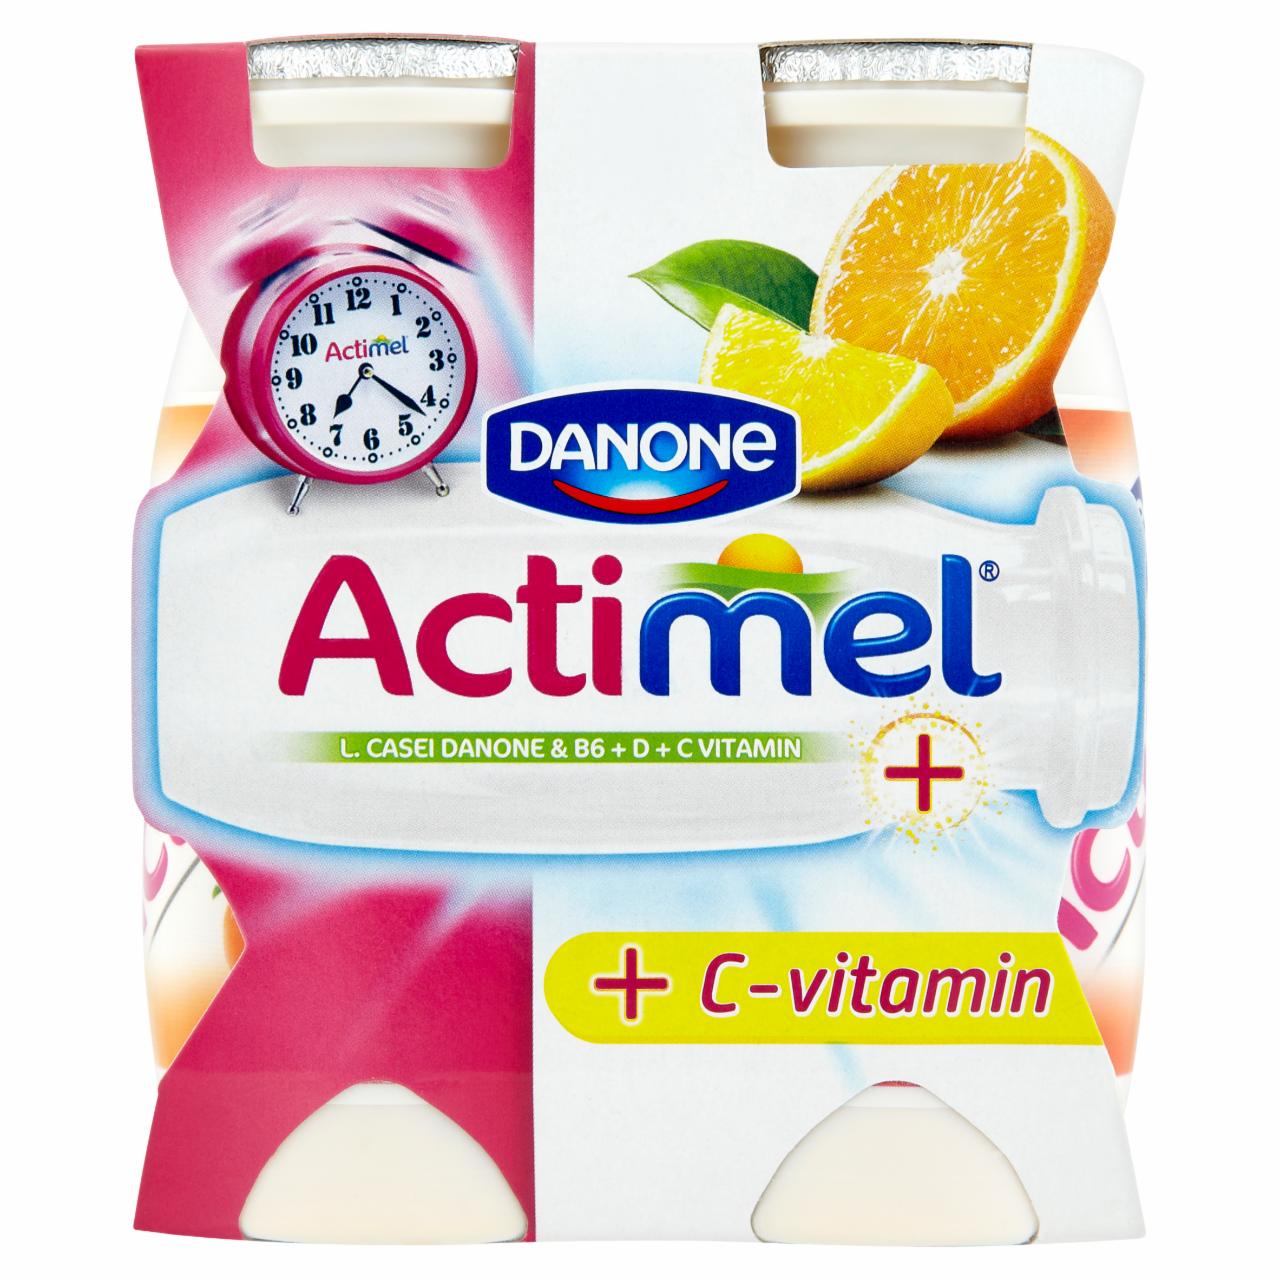 Képek - Danone Actimel L. casei Danone zsírszegény, élőflórás, citrusízű joghurtital 4 x 100 g